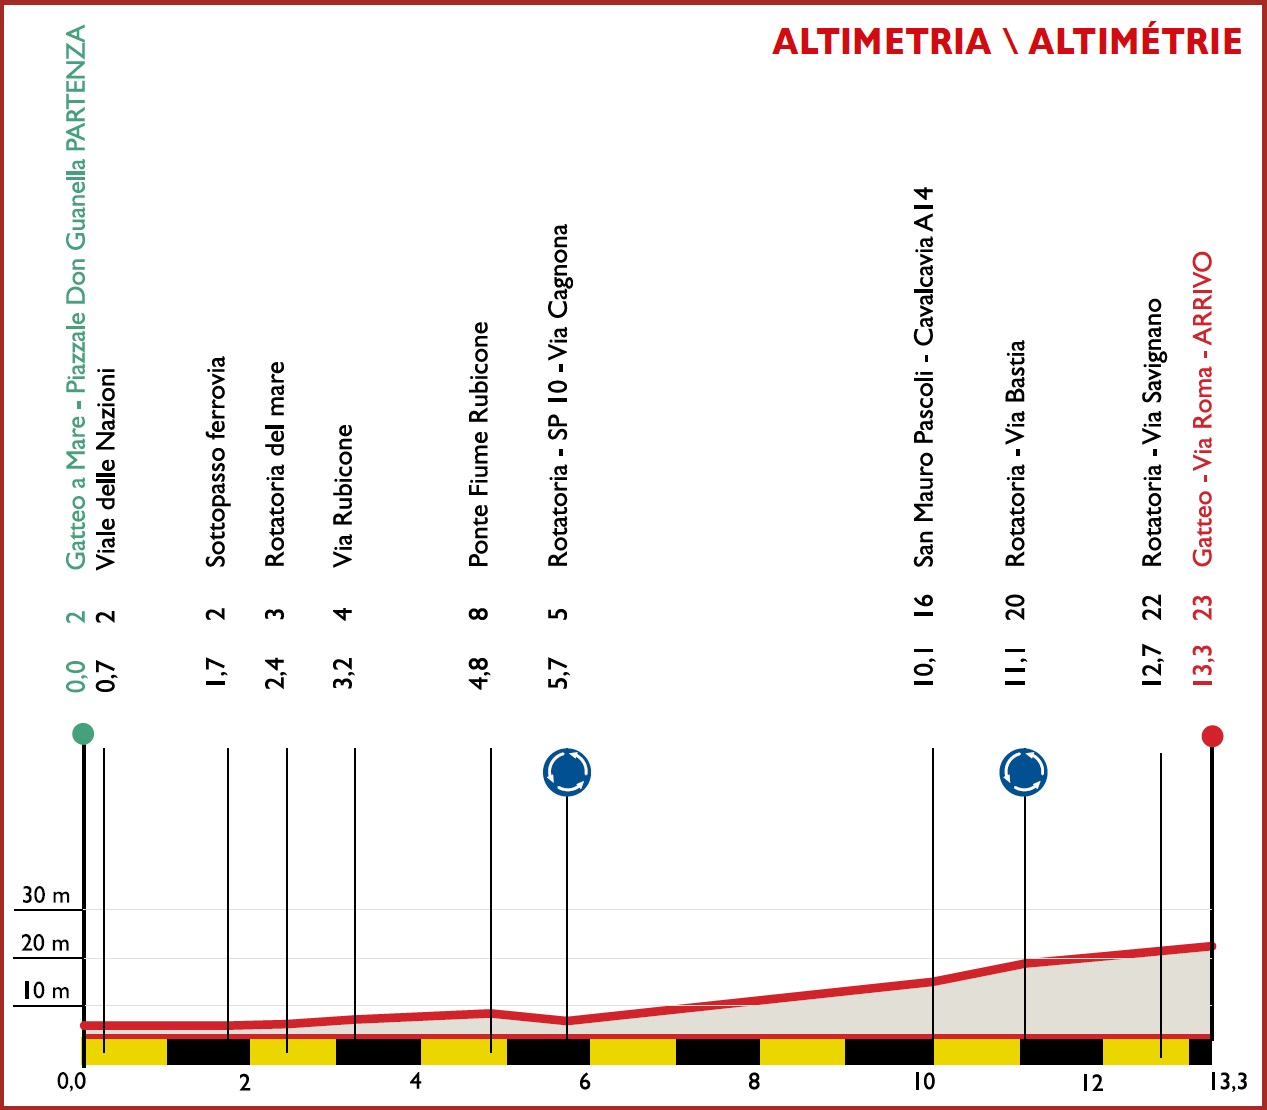 Hhenprofil Settimana Internazionale Coppi e Bartali 2020 - Etappe 1b